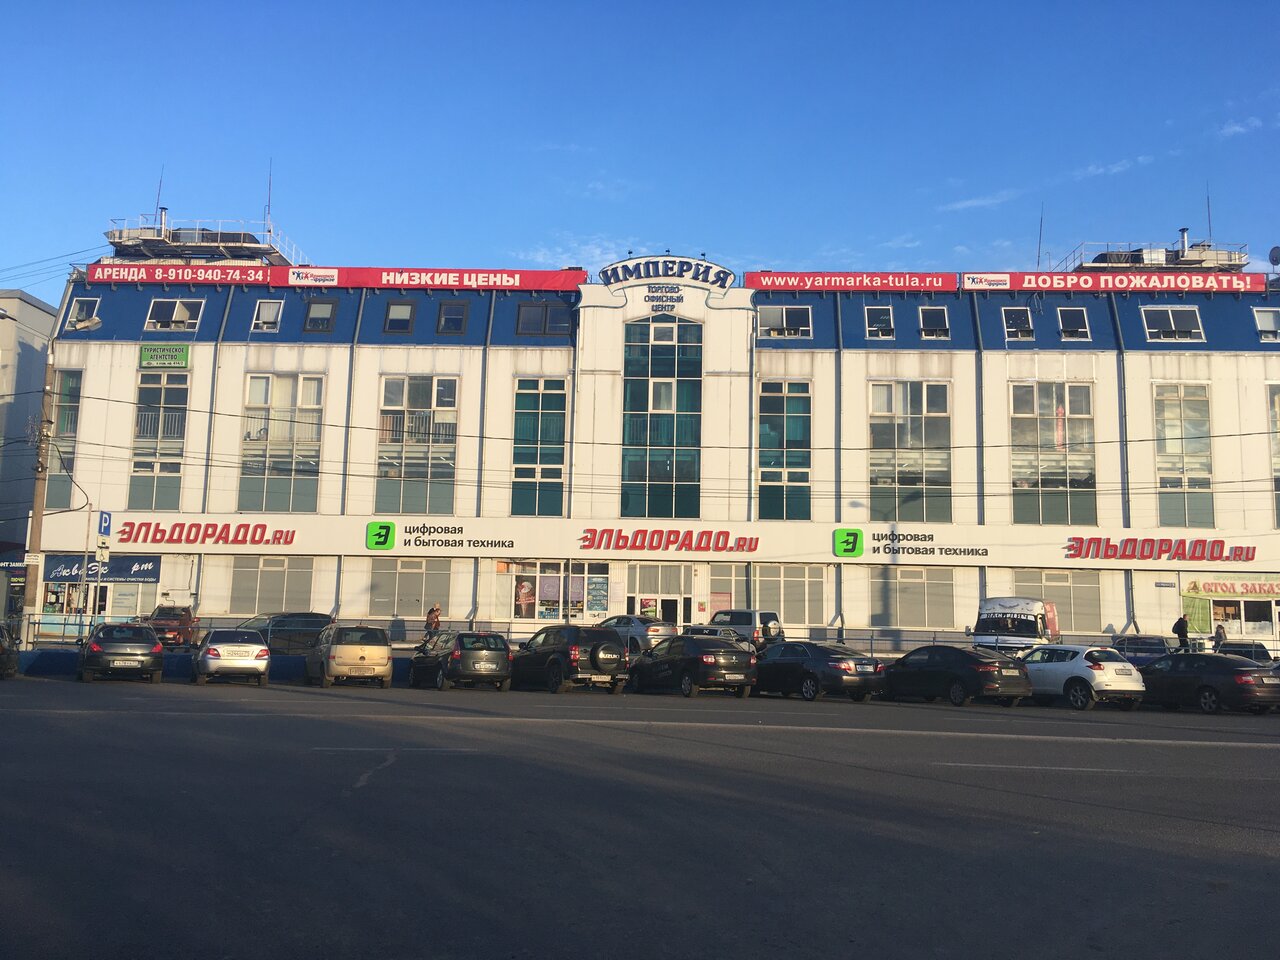 Эльдорадо Новомосковск Телефон Магазина